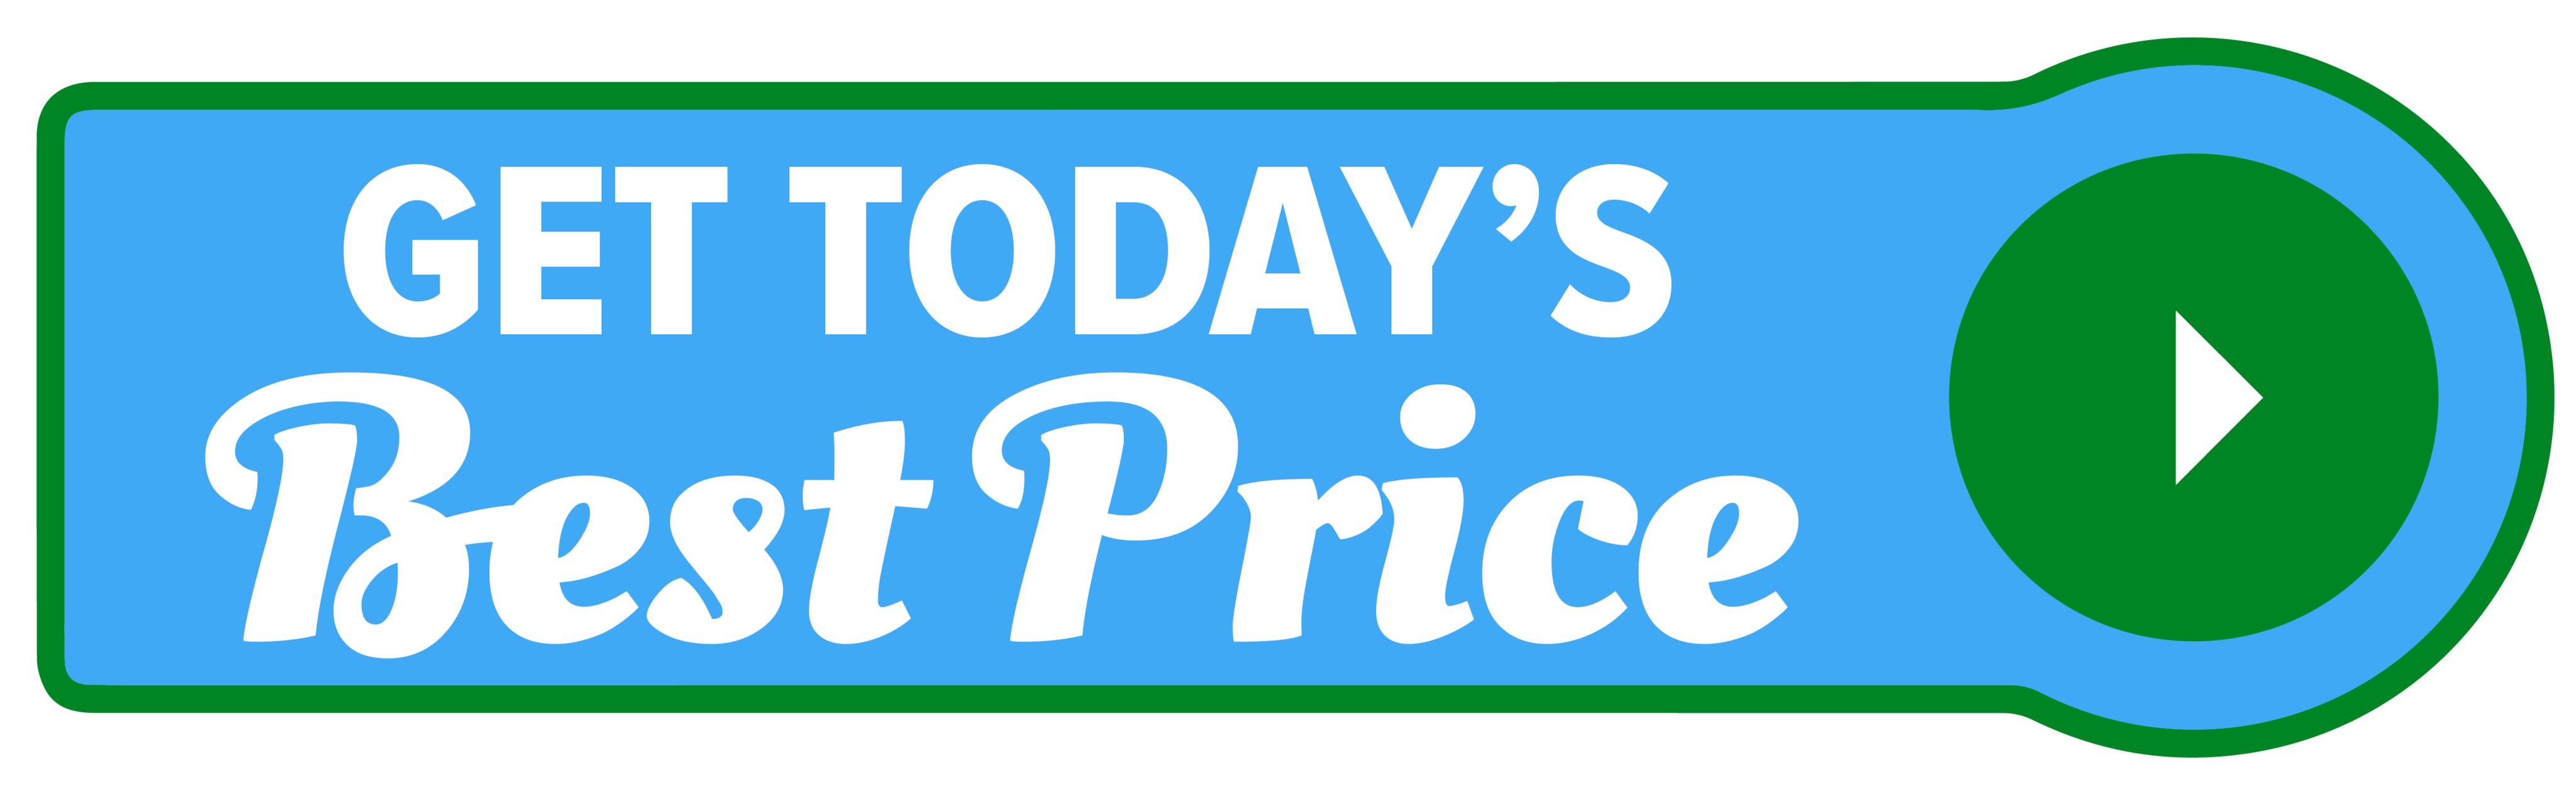 Get Today's Best Price